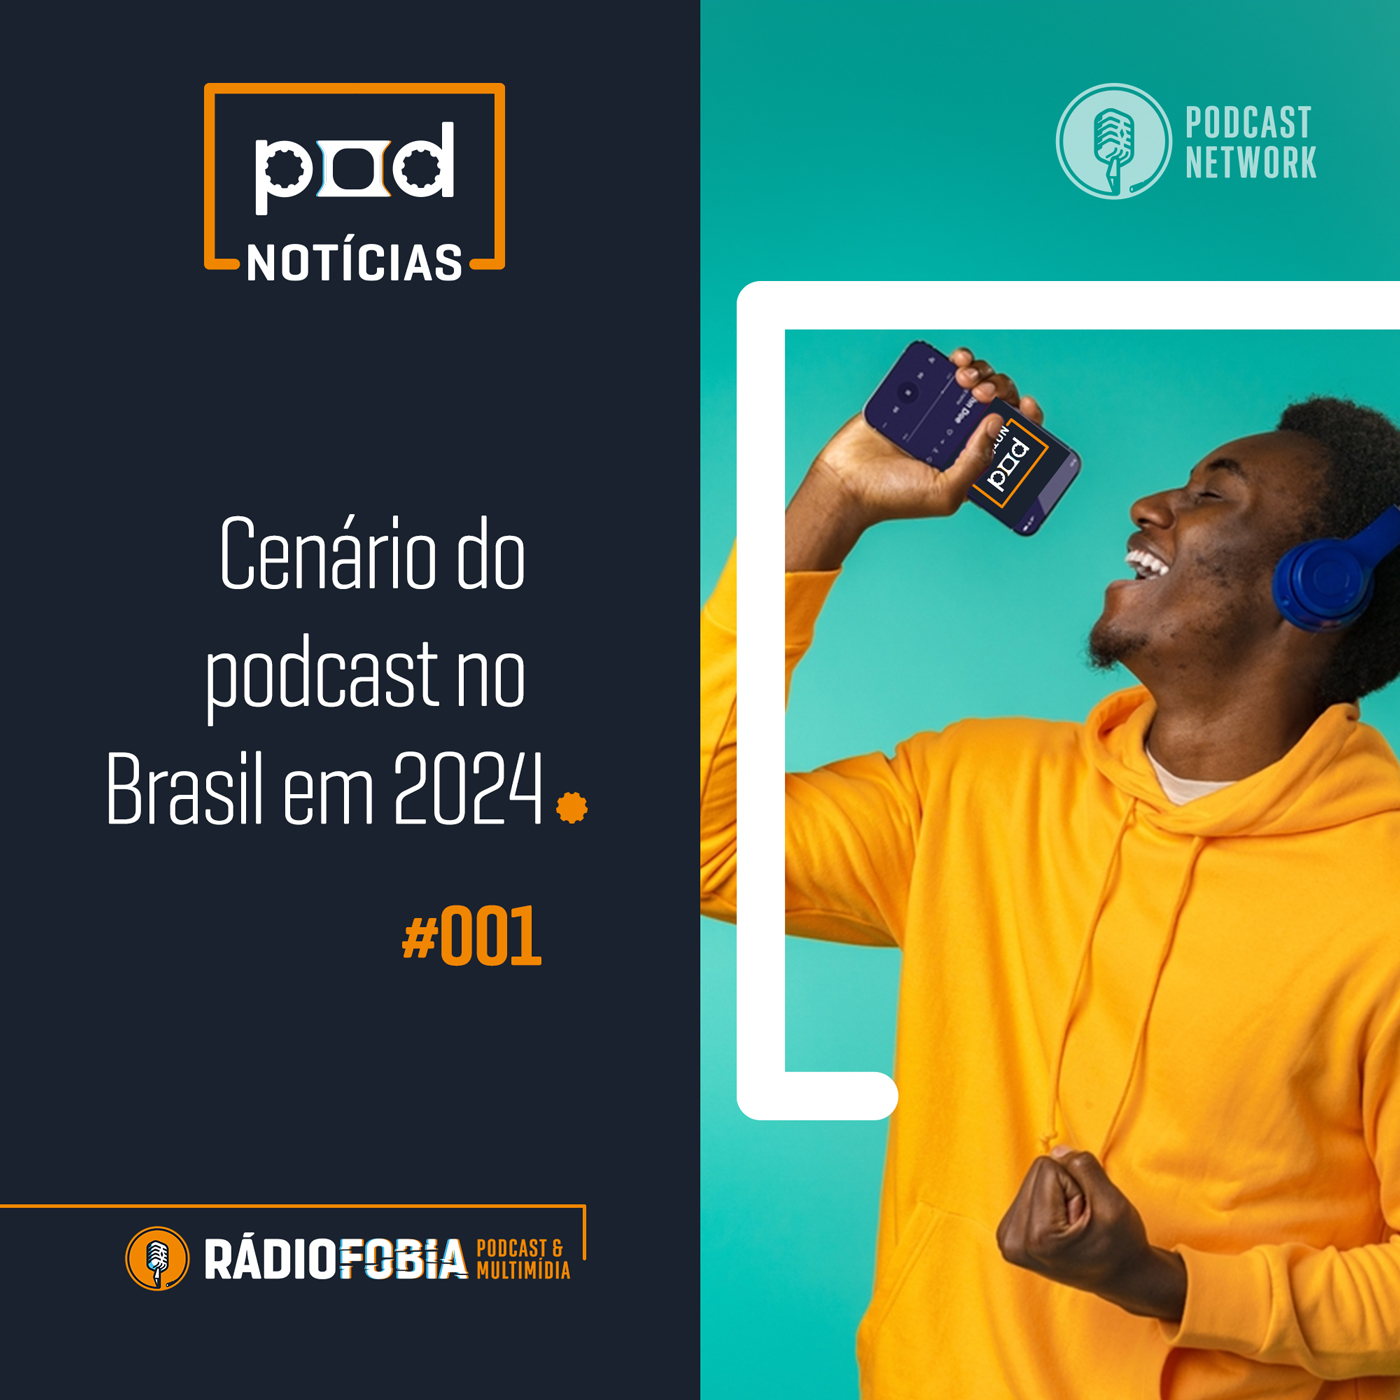 Pod Notícias 001 - Cenário do podcast no Brasil em 2024